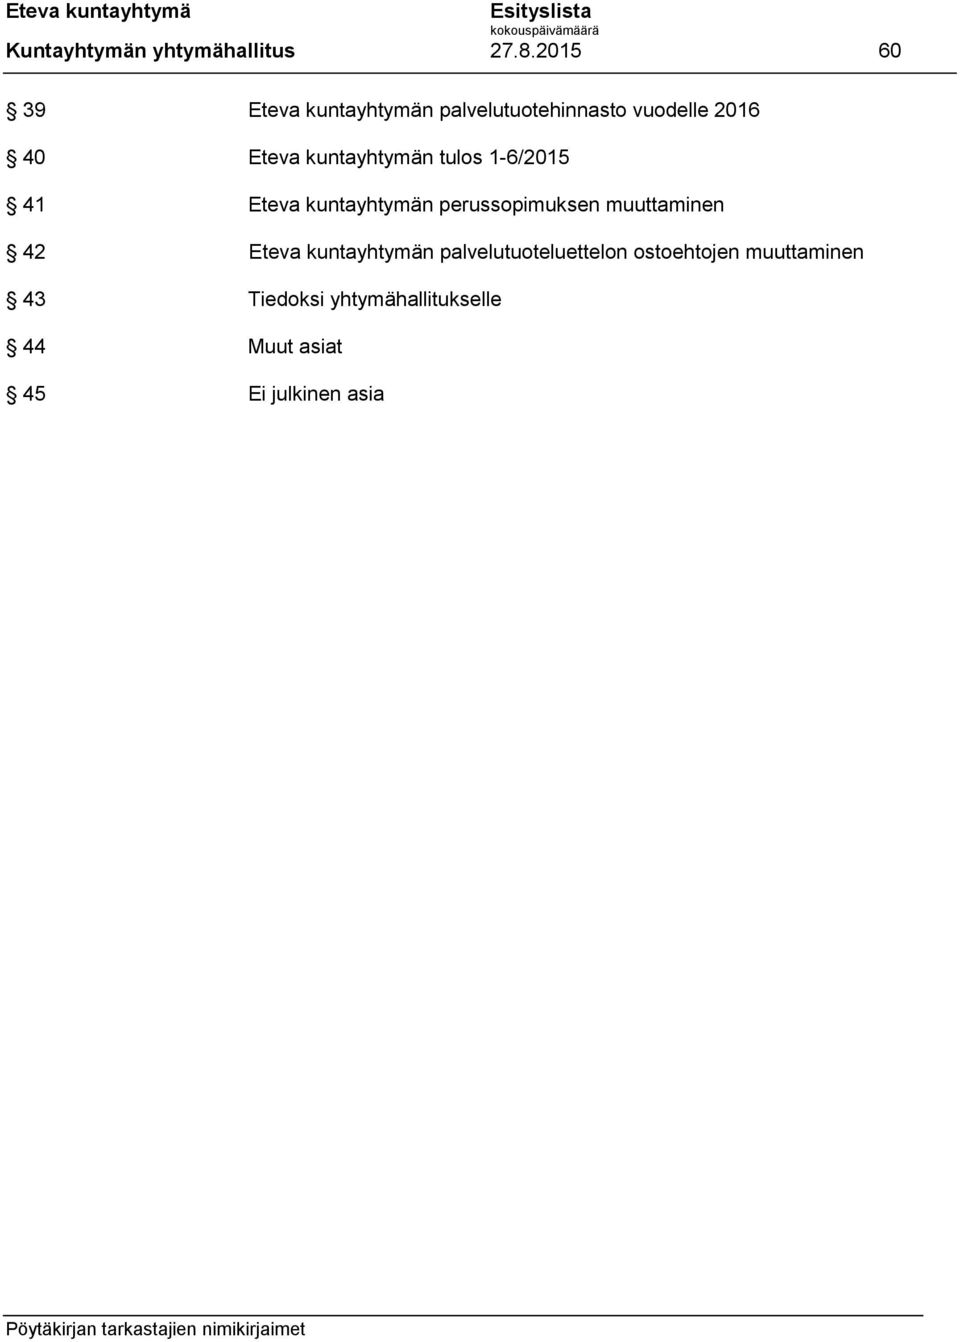 kuntayhtymän tulos 1-6/2015 41 Eteva kuntayhtymän perussopimuksen muuttaminen